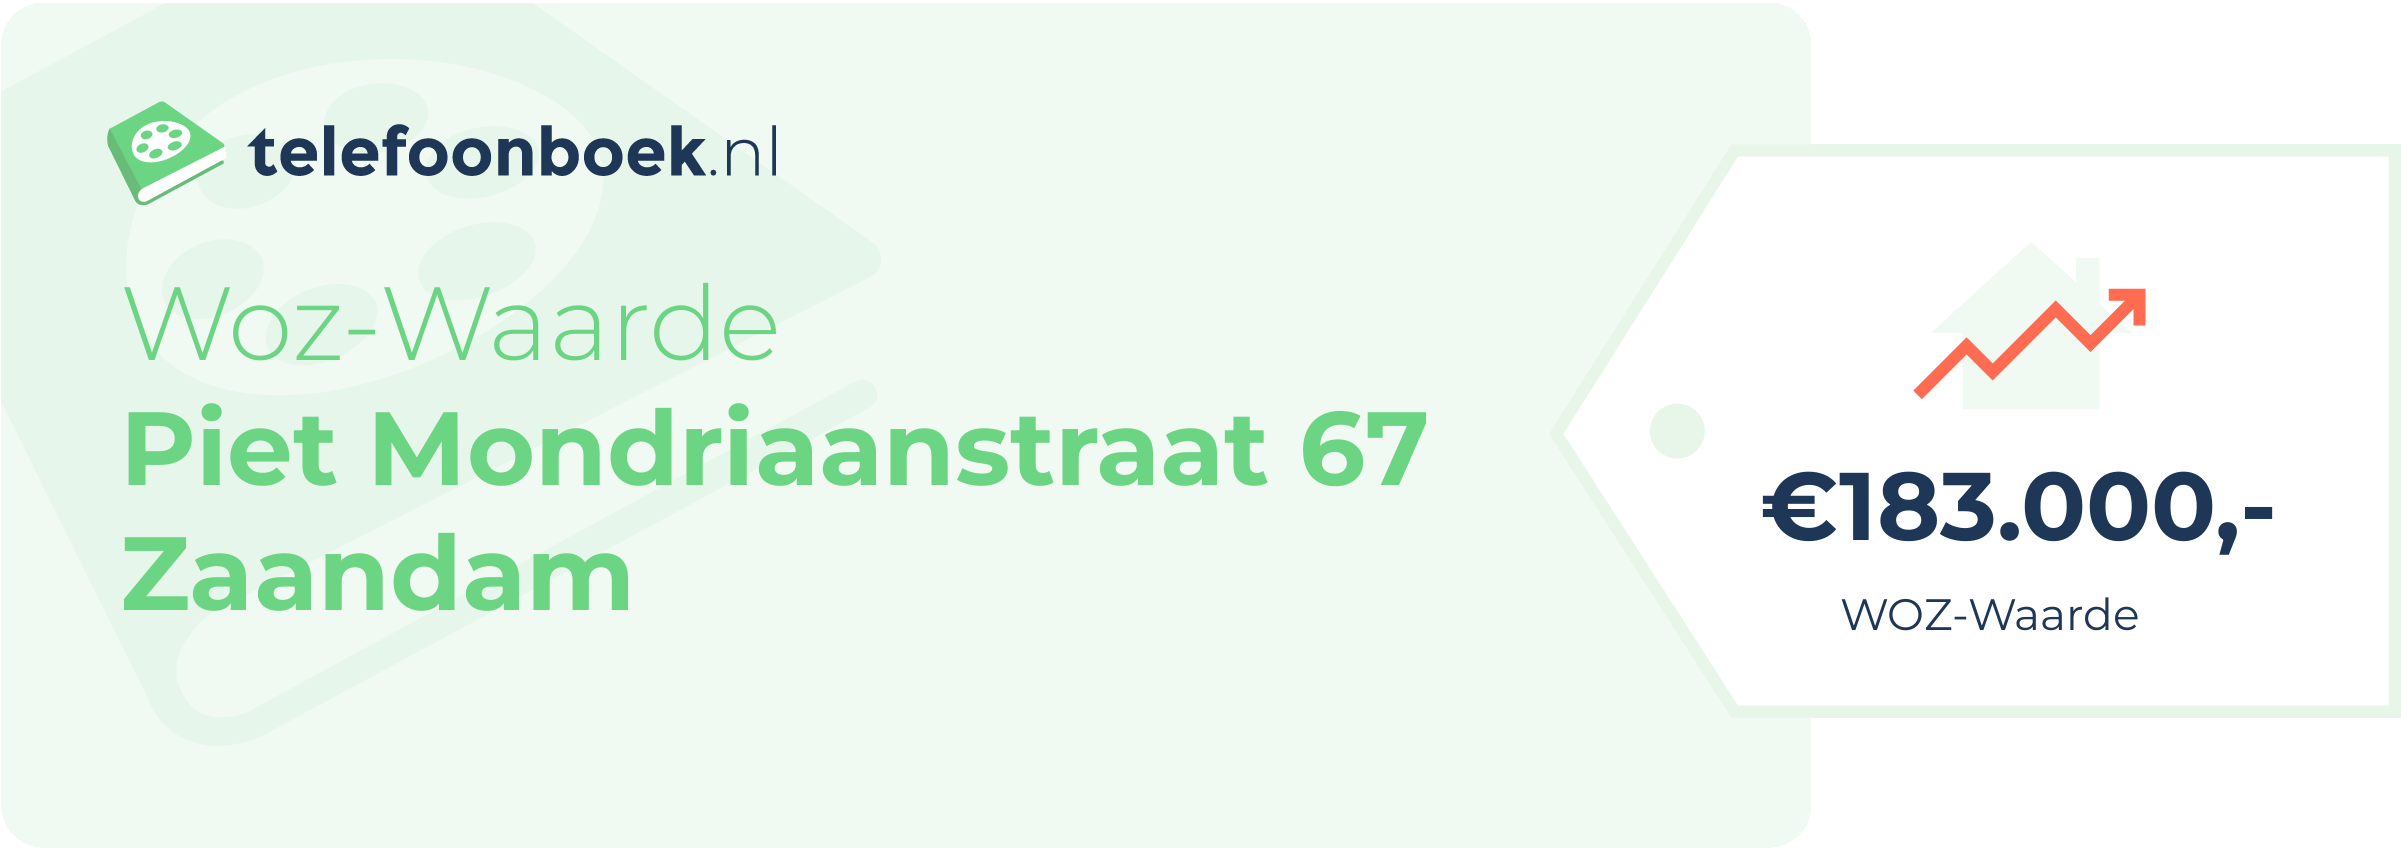 WOZ-waarde Piet Mondriaanstraat 67 Zaandam